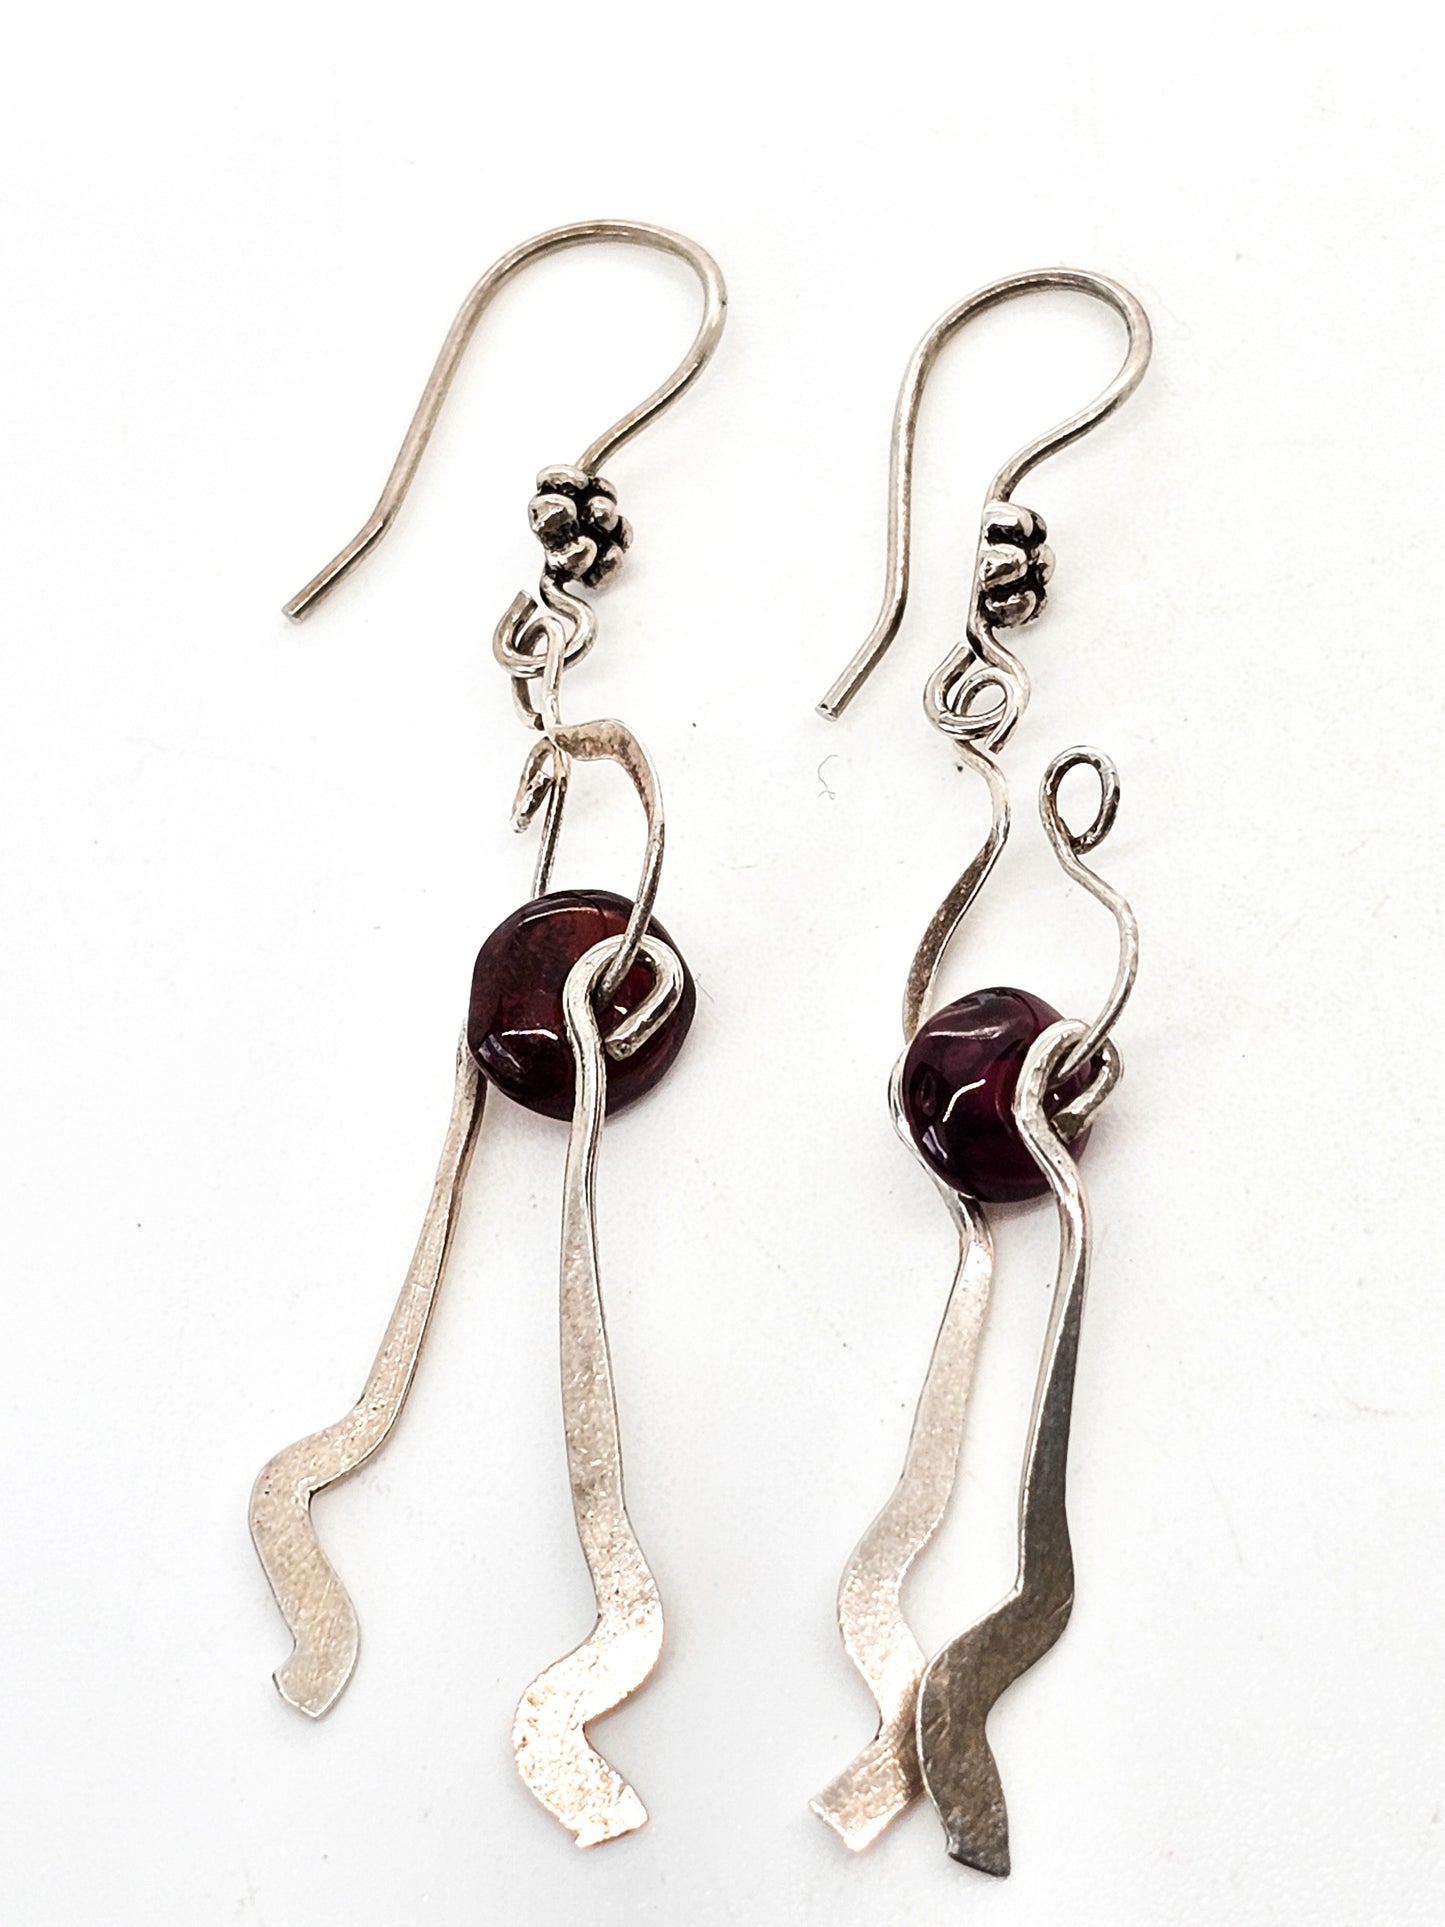 Abstract Artisan Modernist drop red garnet gemstone beaded vintage sterling silver earrings